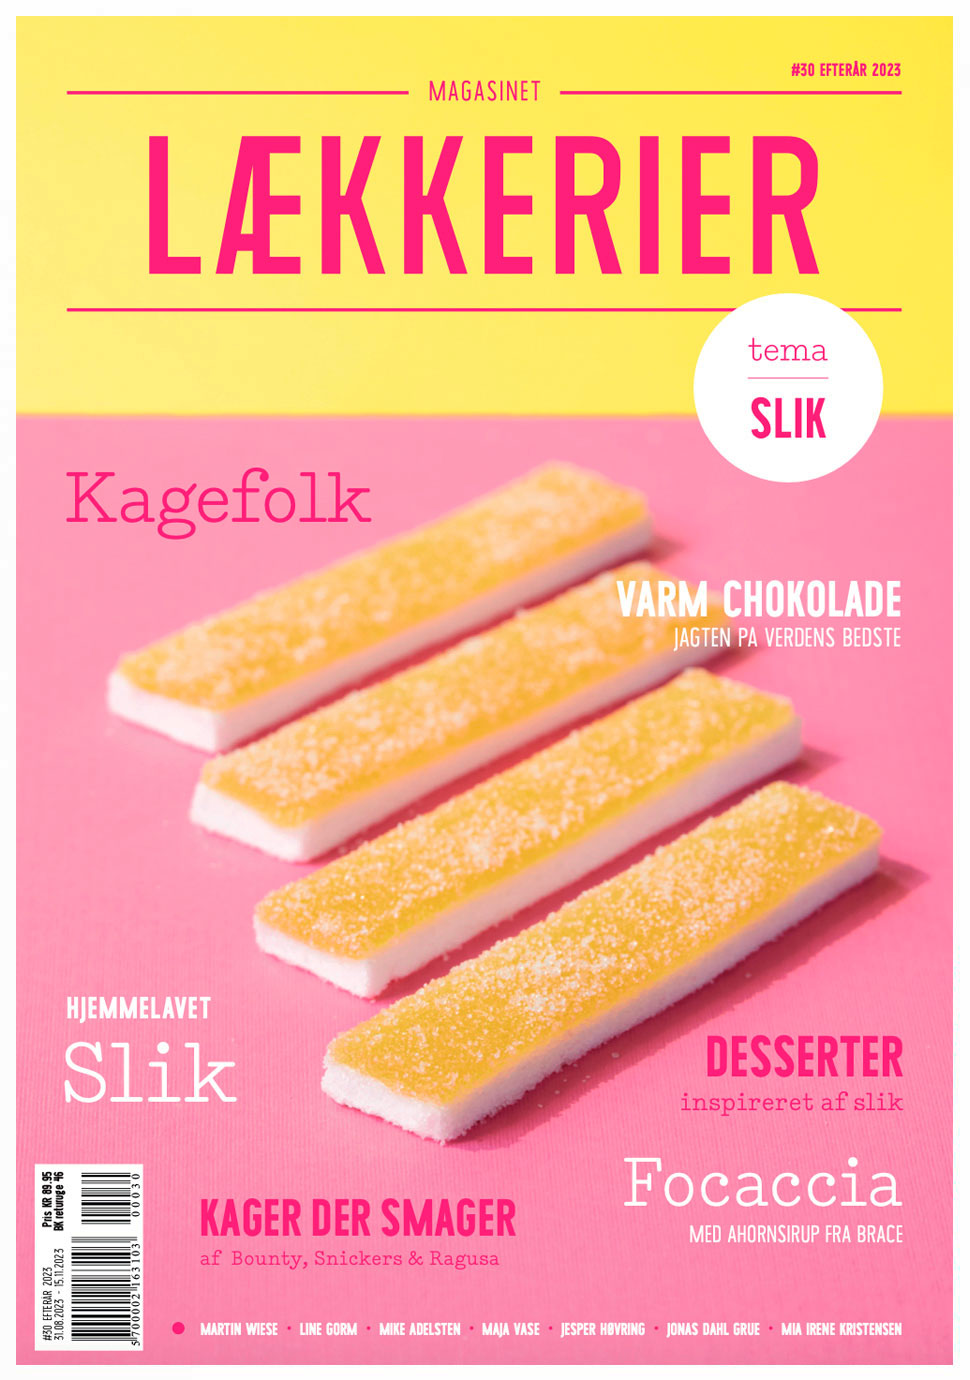 lækkerier-magasin-forside-30-hvid-kant2